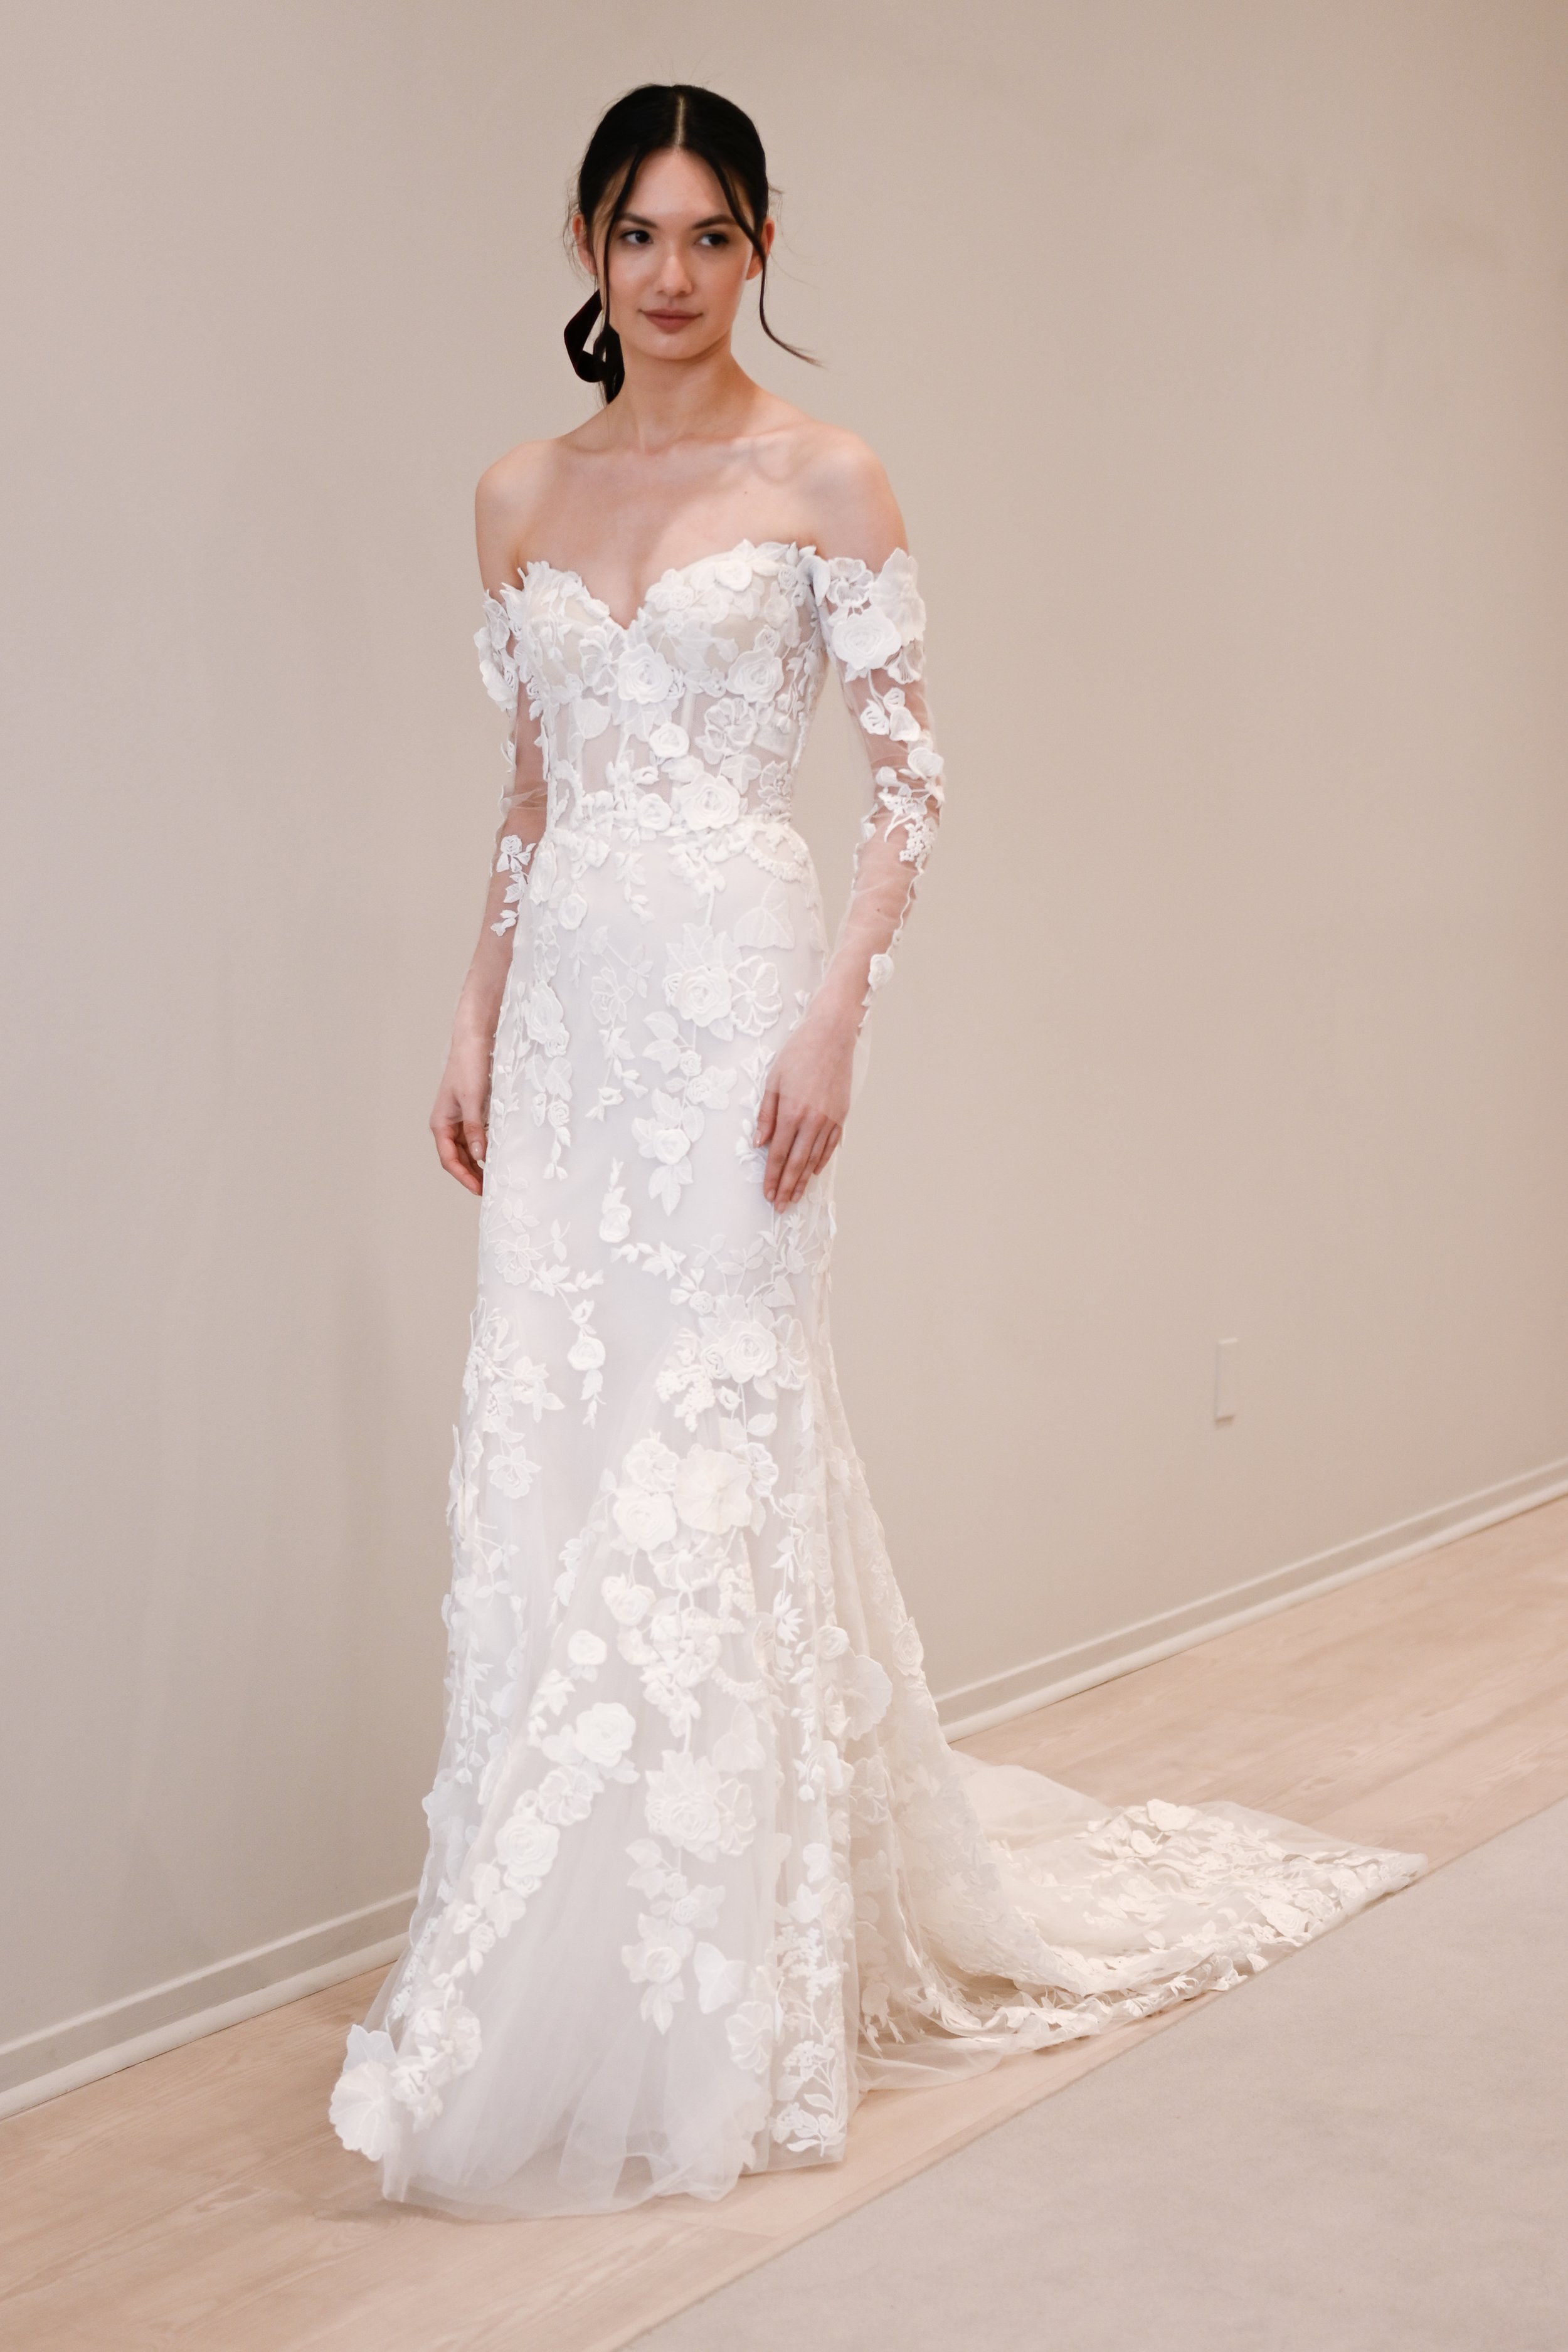 Monique Lhuillier Marissa Mini New Wedding Dress Save 26% - Stillwhite